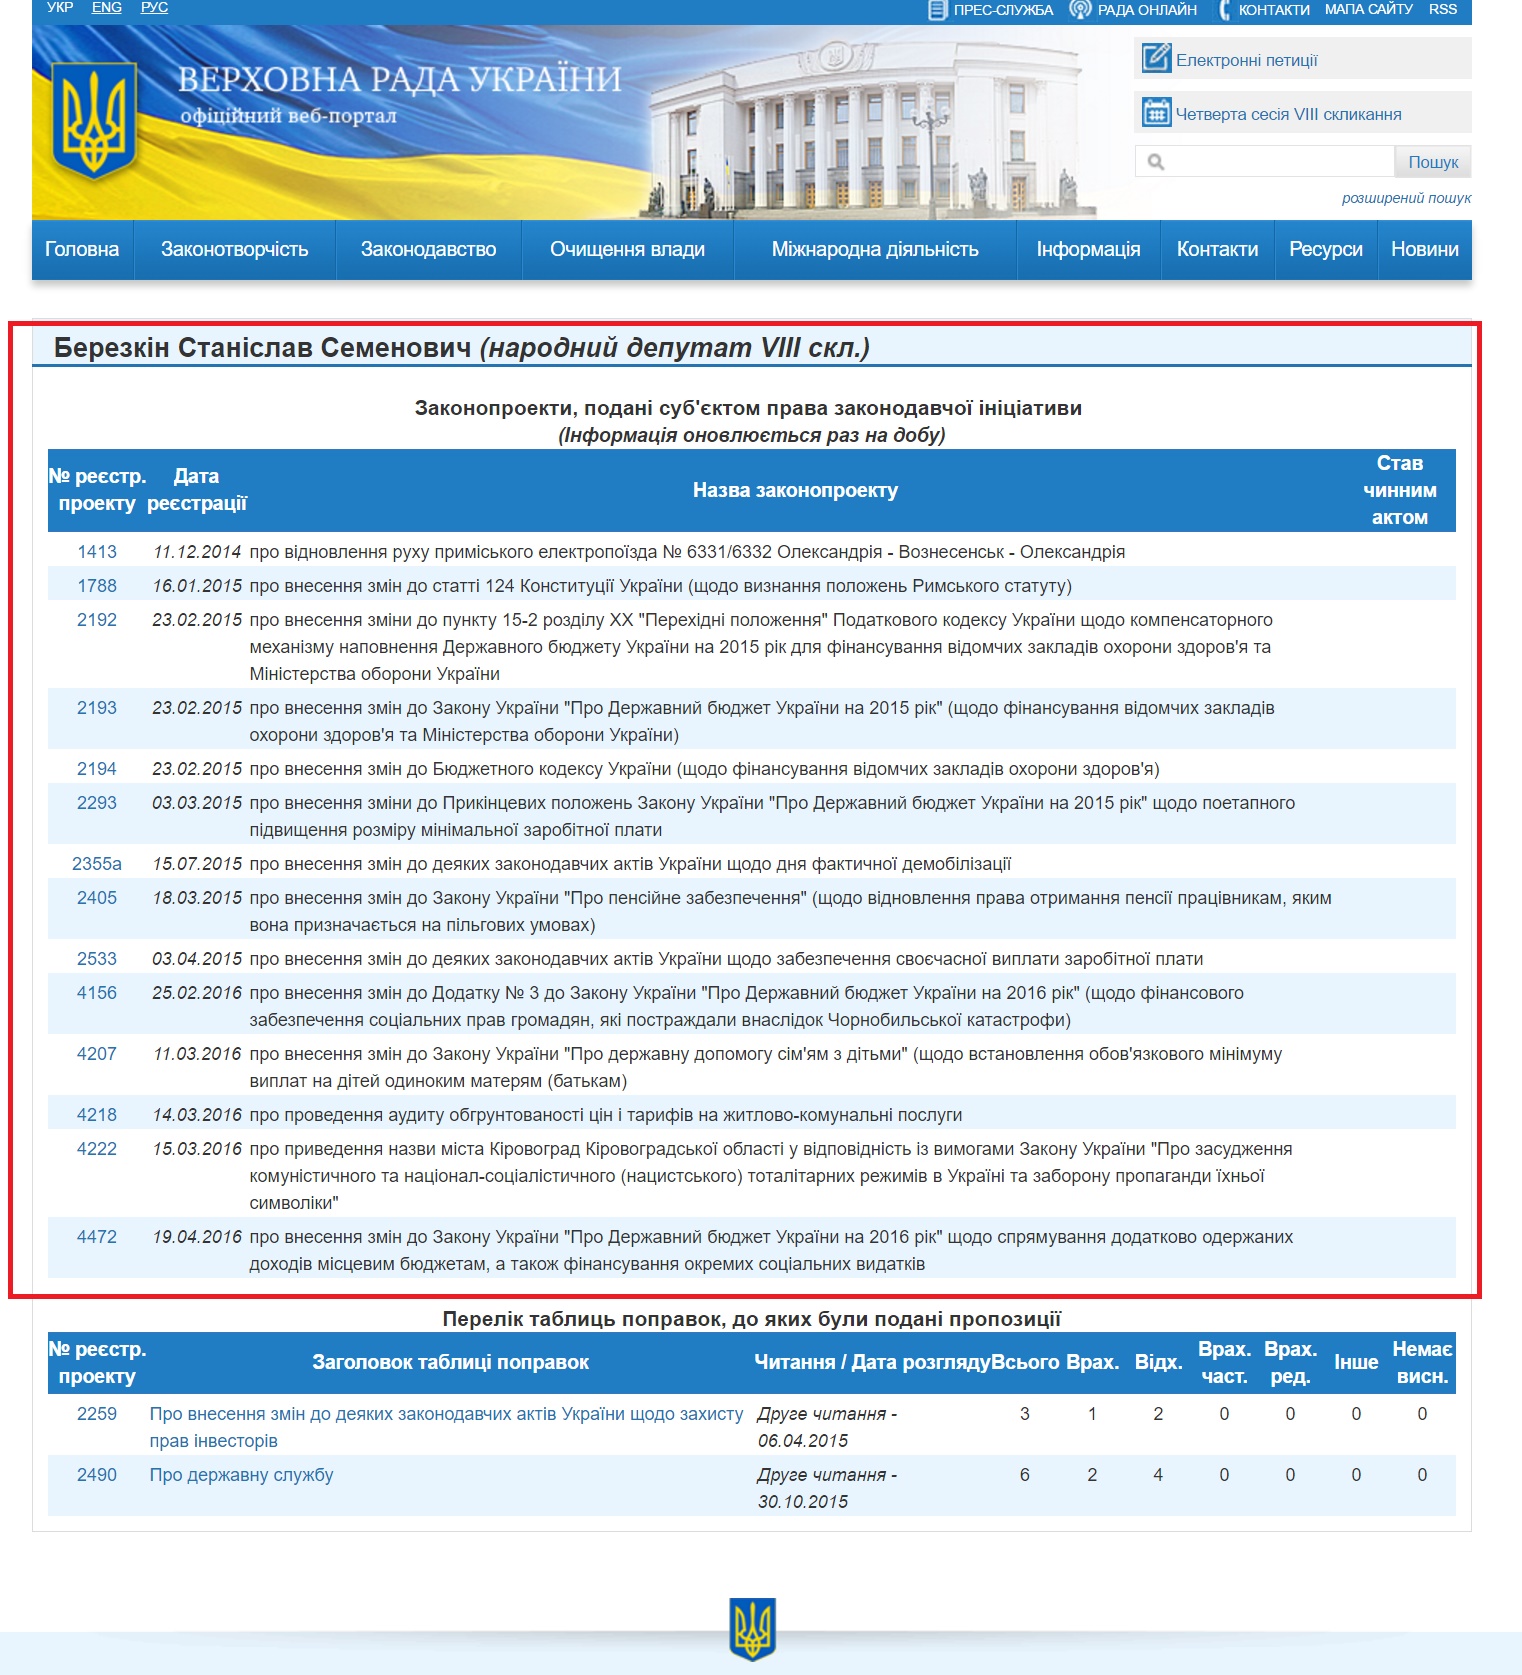 http://w1.c1.rada.gov.ua/pls/pt2/reports.dep2?PERSON=14393&SKL=9